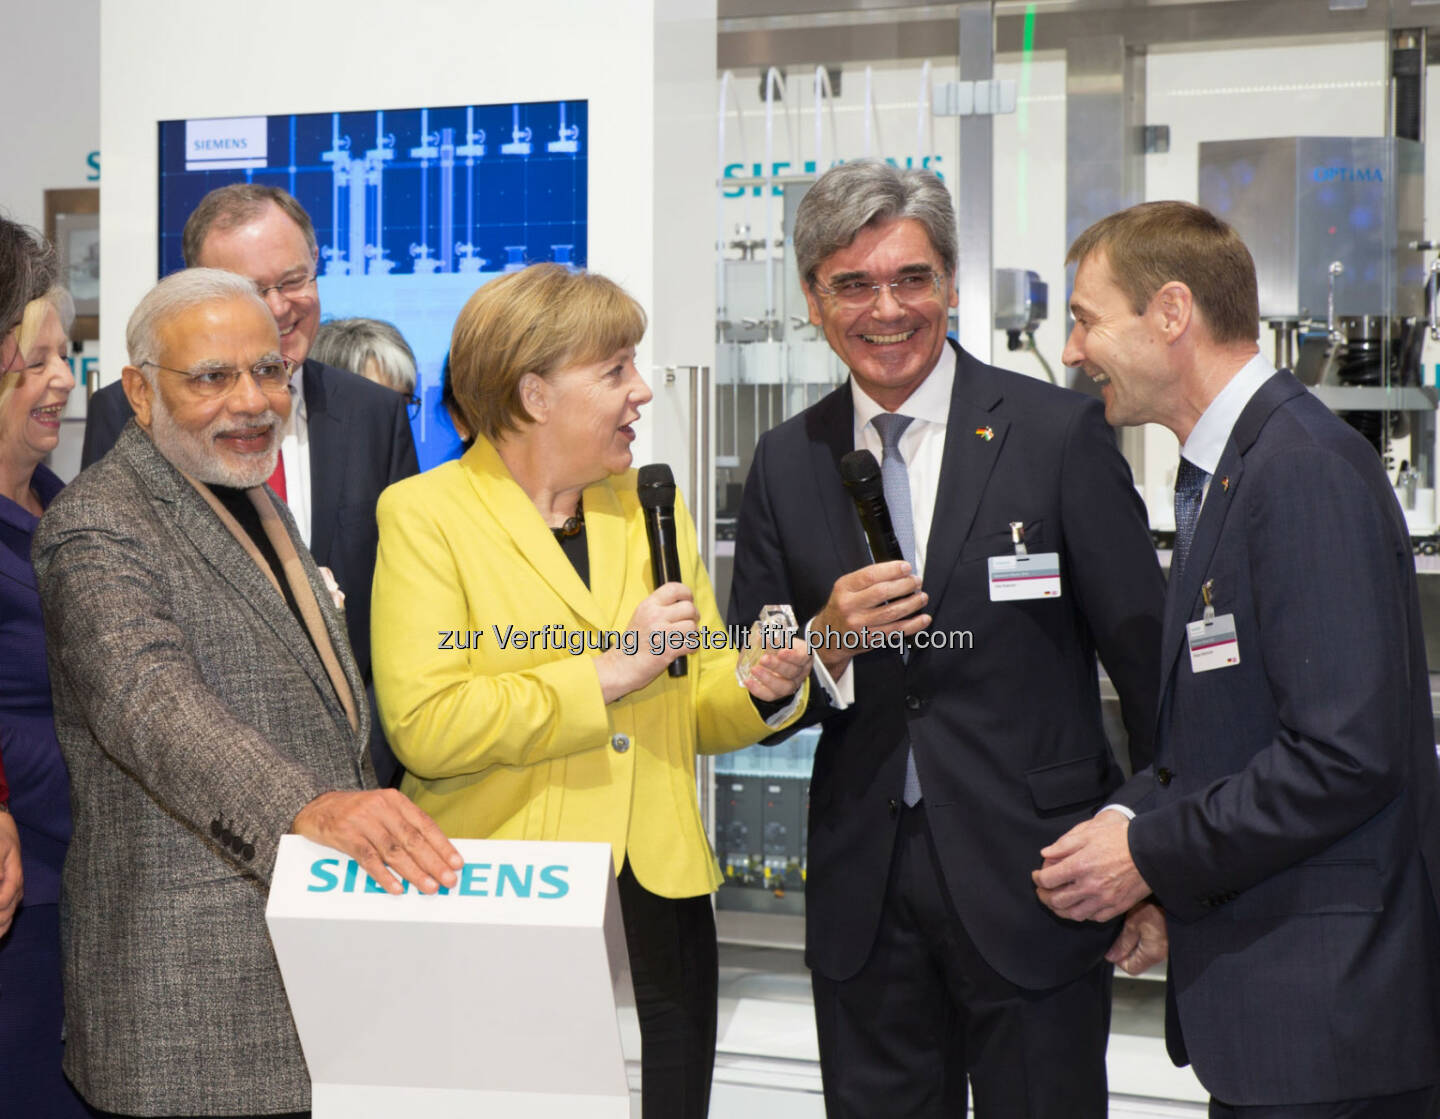 Bundeskanzlerin Angela Merkel und der indische Ministerpräsident Narendra Modi sprachen mit Siemens-Vorstand Joe Kaeser und Vorstandsmitglied Klaus Helmrich auf der Hannover Messe.

